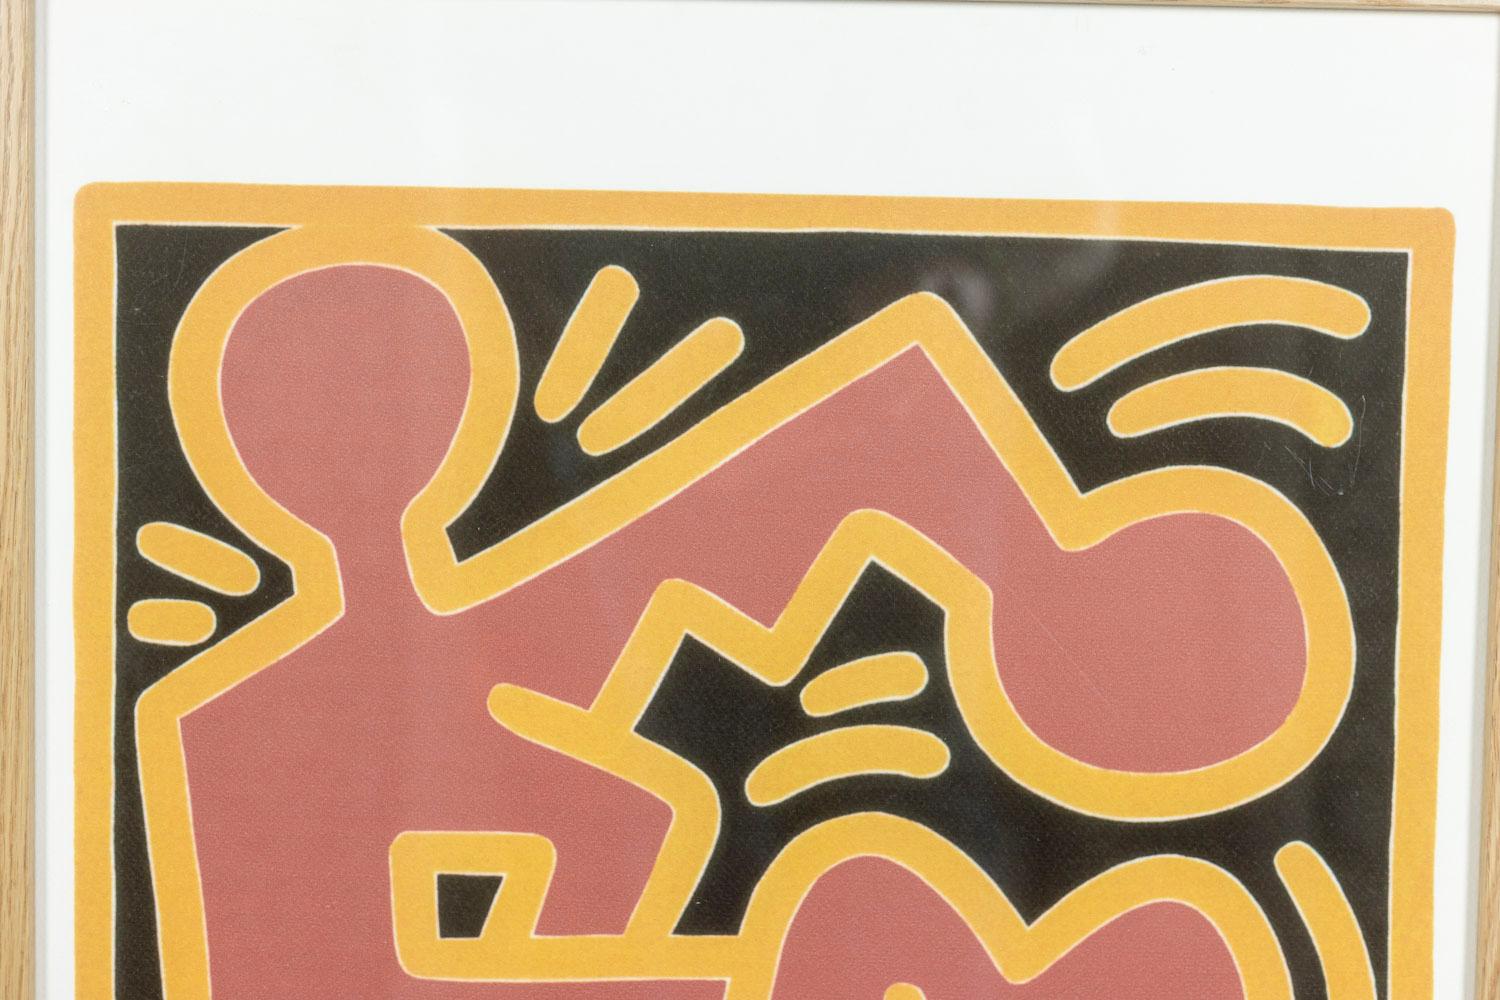 Keith Haring, signé et numéroté.

Lithographie représentant des personnages schématiques, dans les tons rouge et noir, dans son cadre en chêne blond.

Numéroté 31/150.

Travail américain réalisé dans les années 1990.